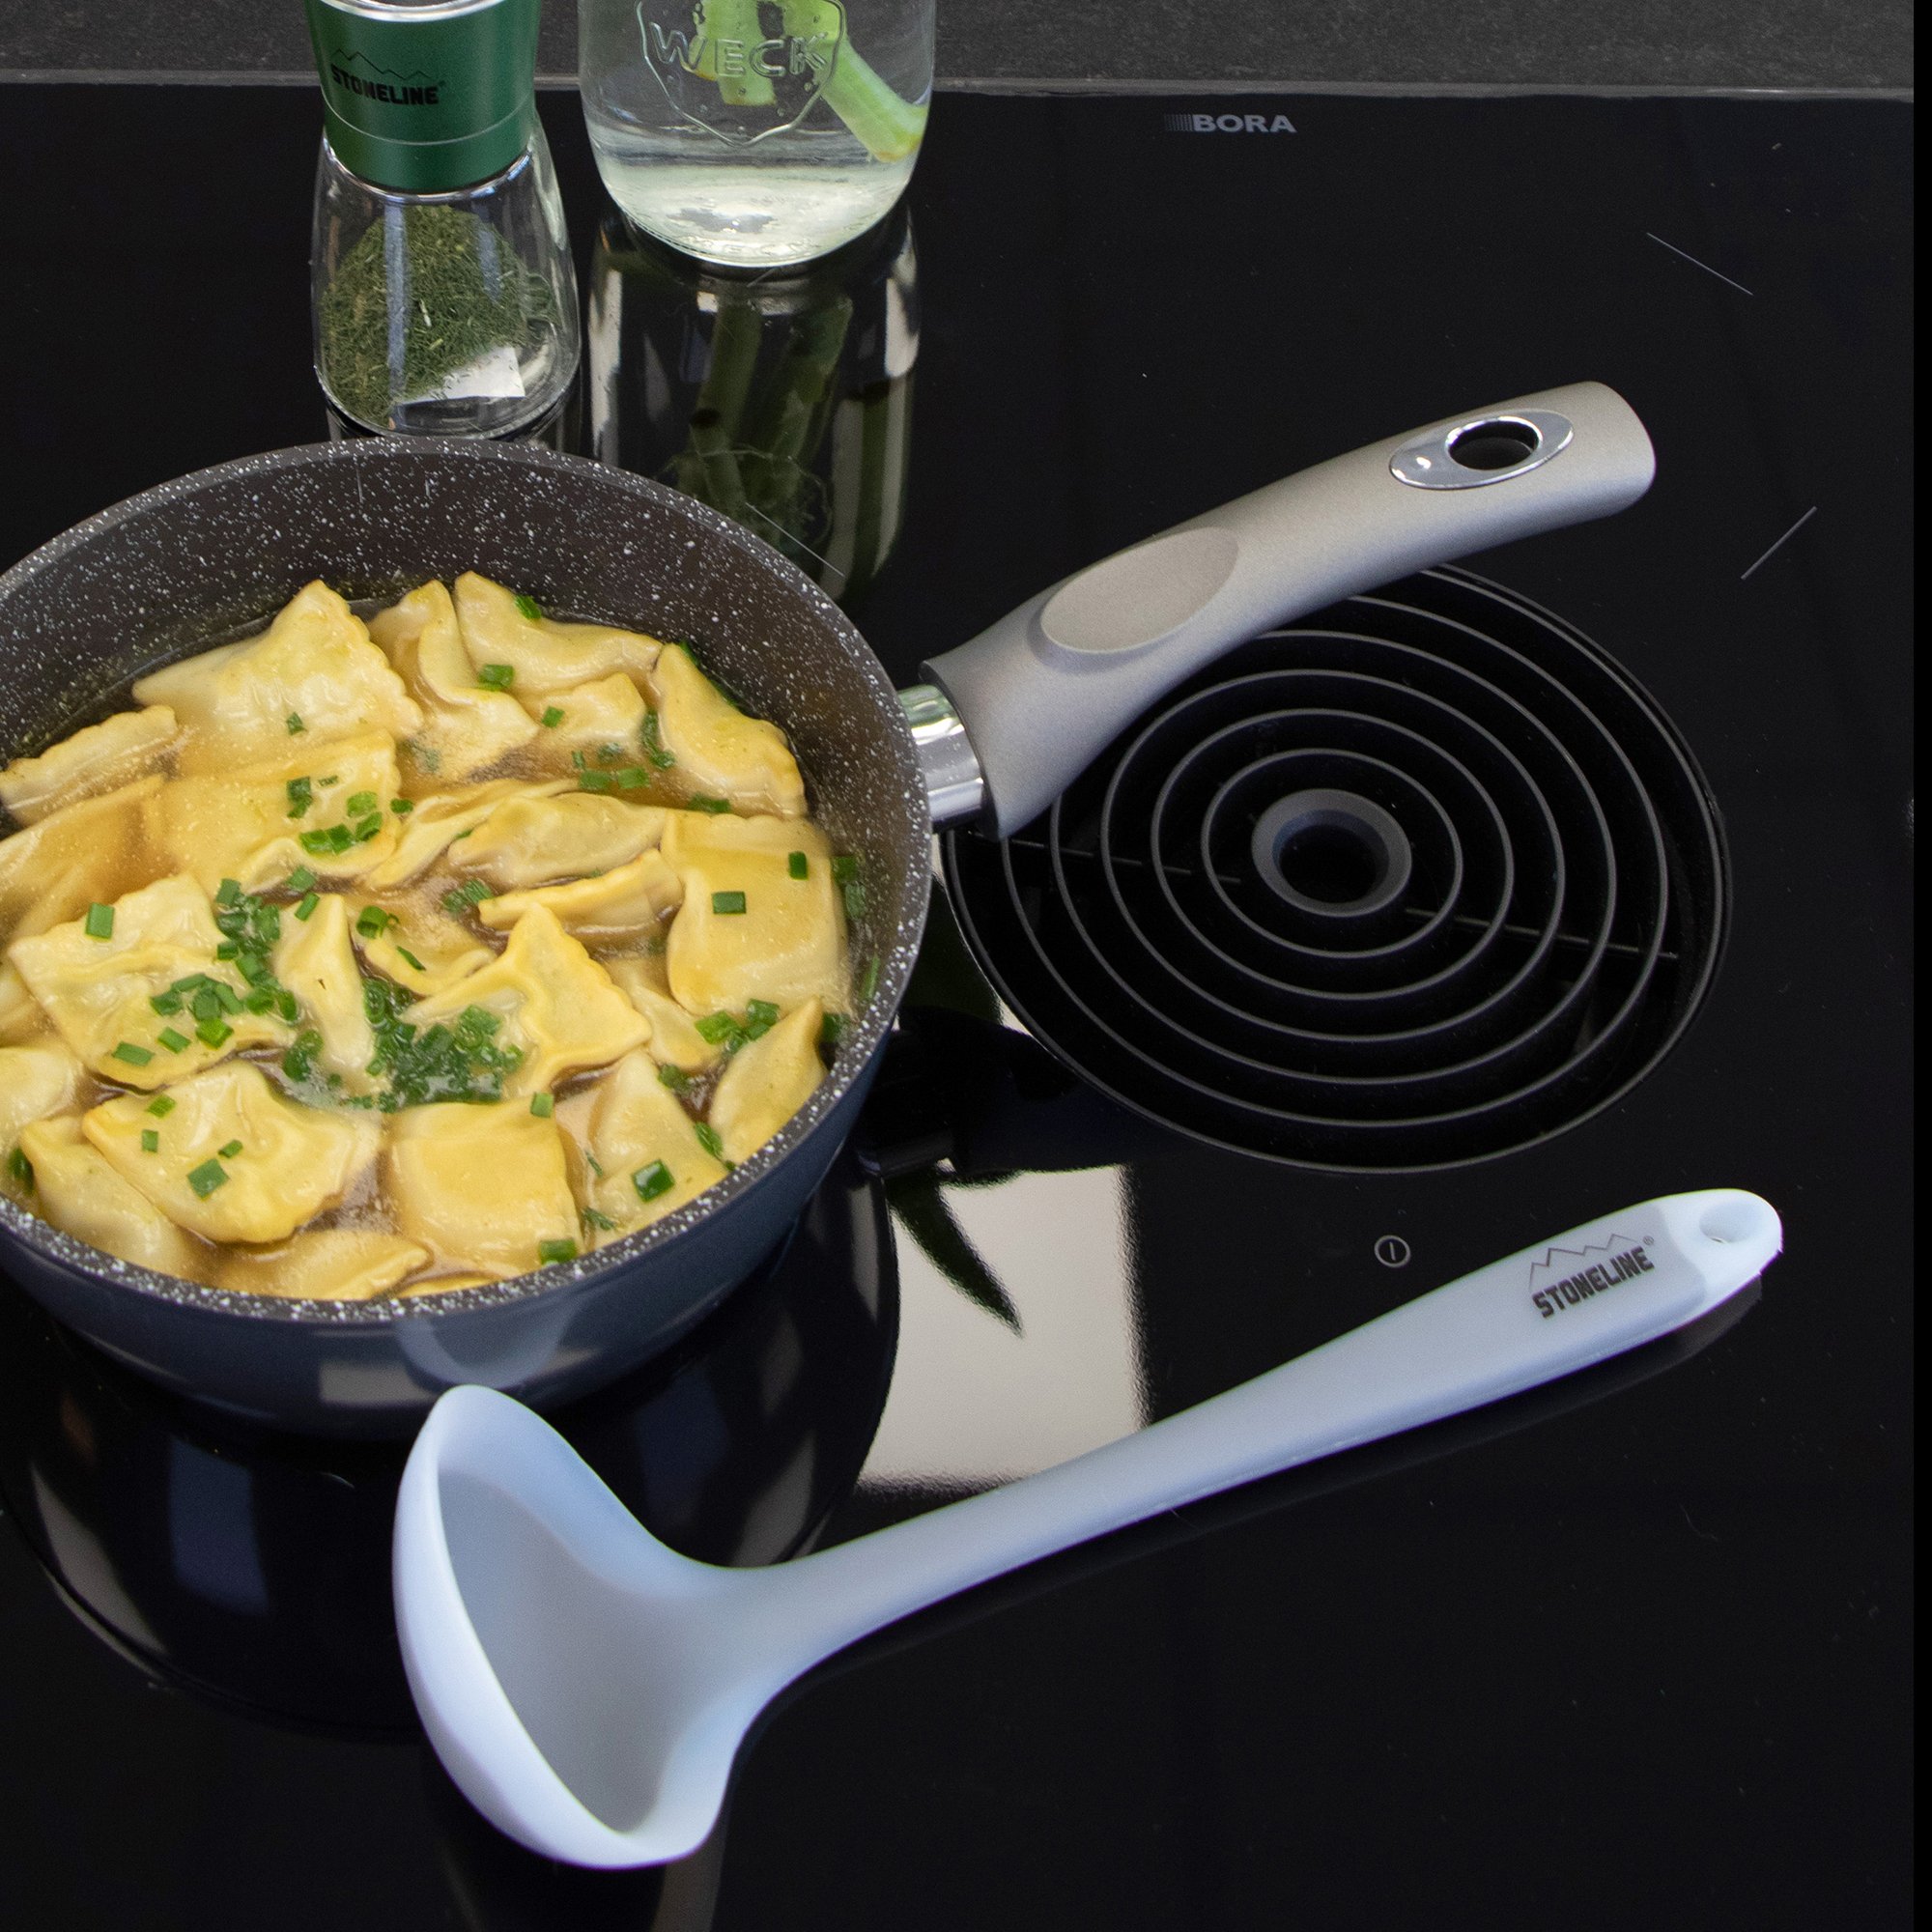 STONELINE® Kitchen gadget set, 3 pcs. 1 scraper, 1 cooking spoon and 1 soup ladle